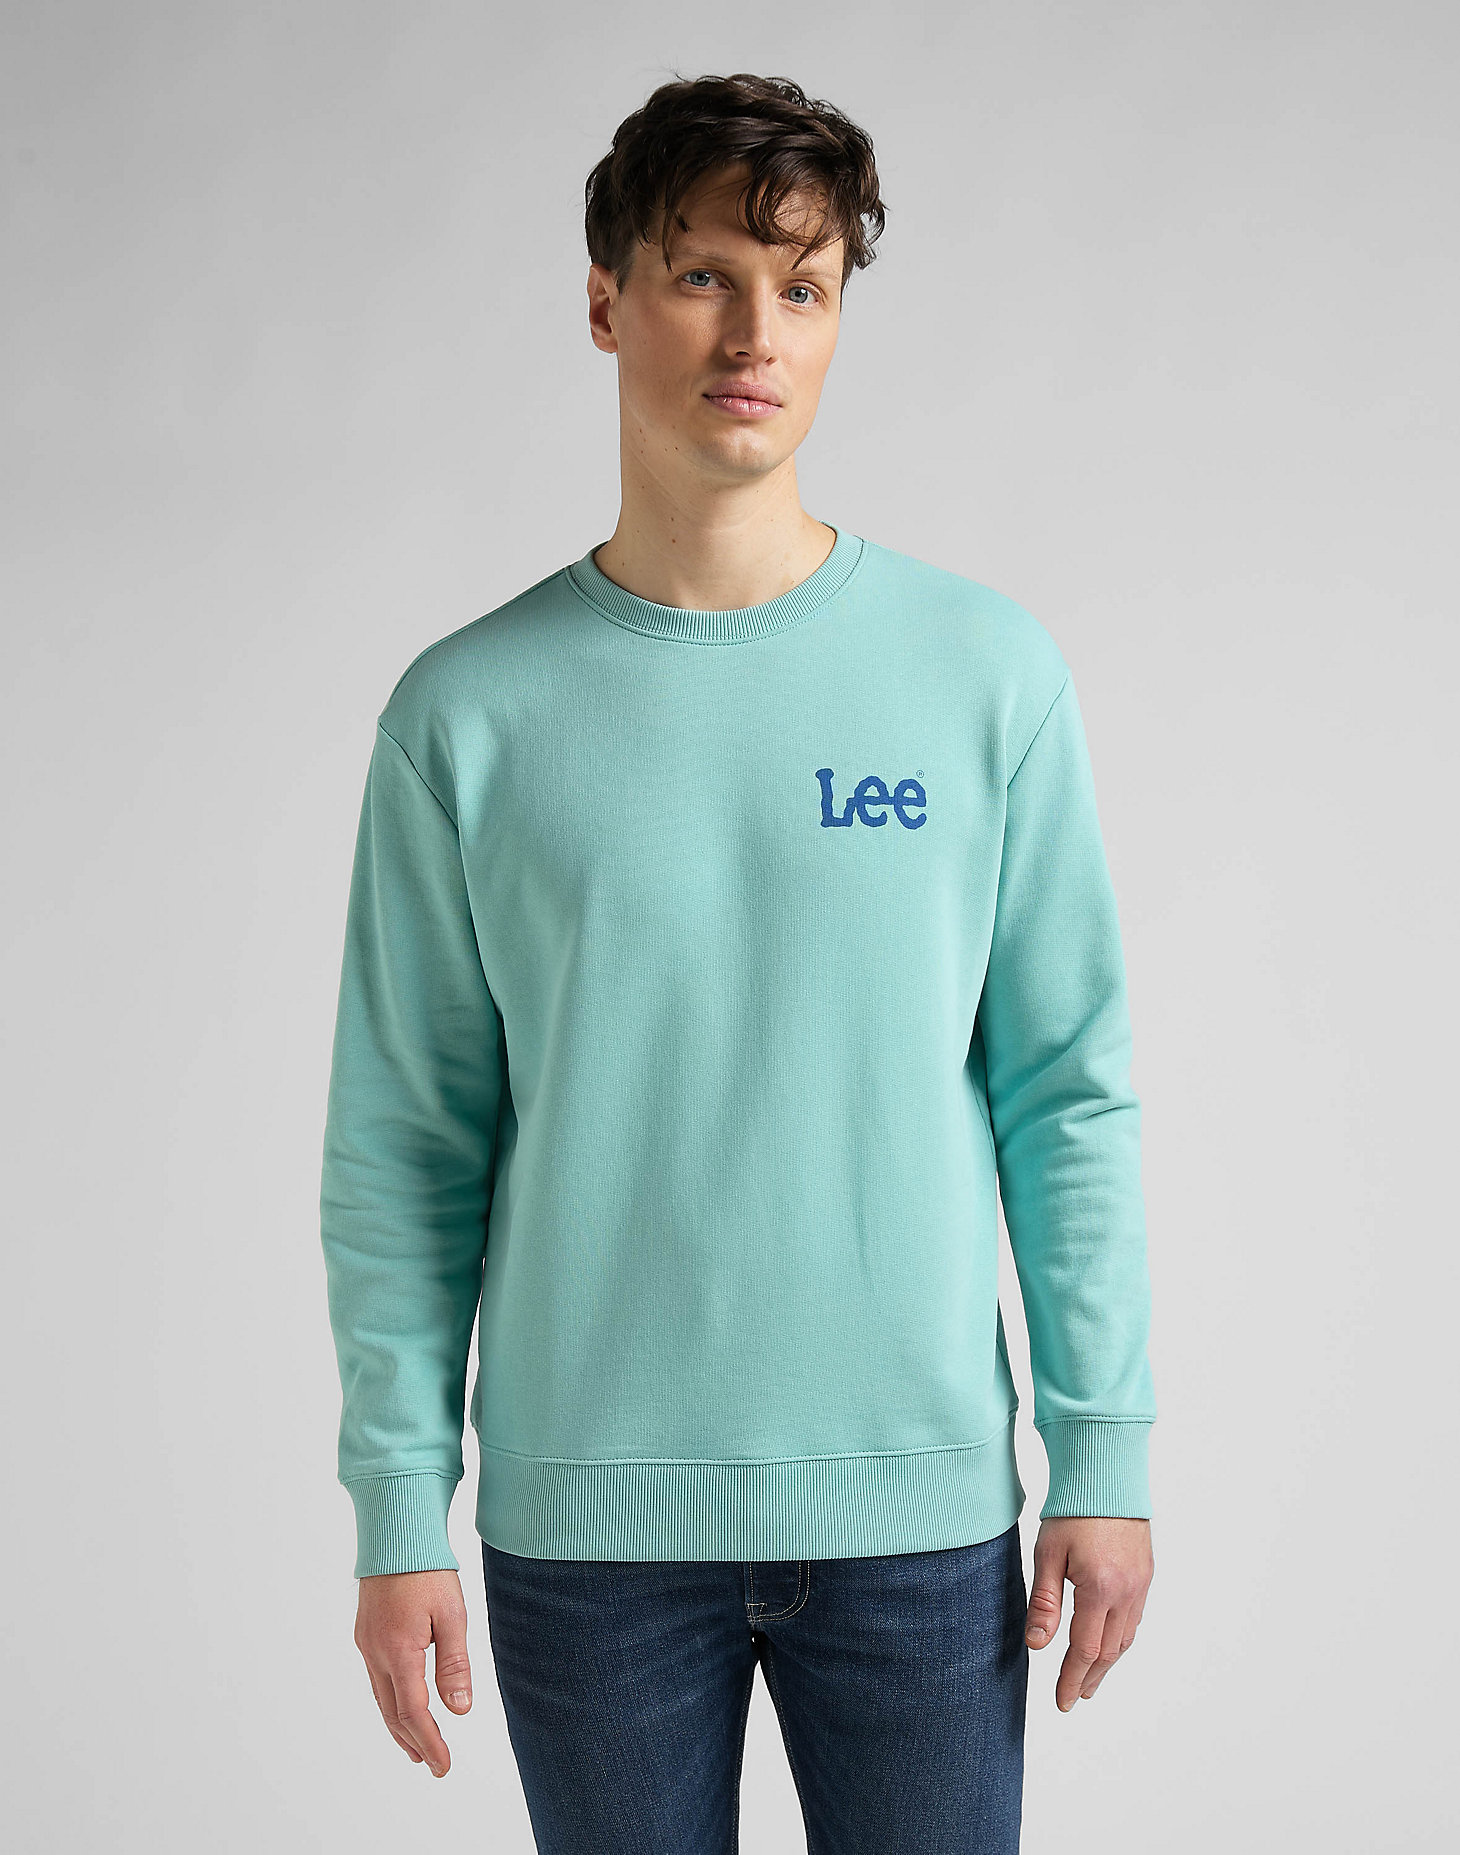 Wobbly Lee Sweatshirt in Mint Blue main view